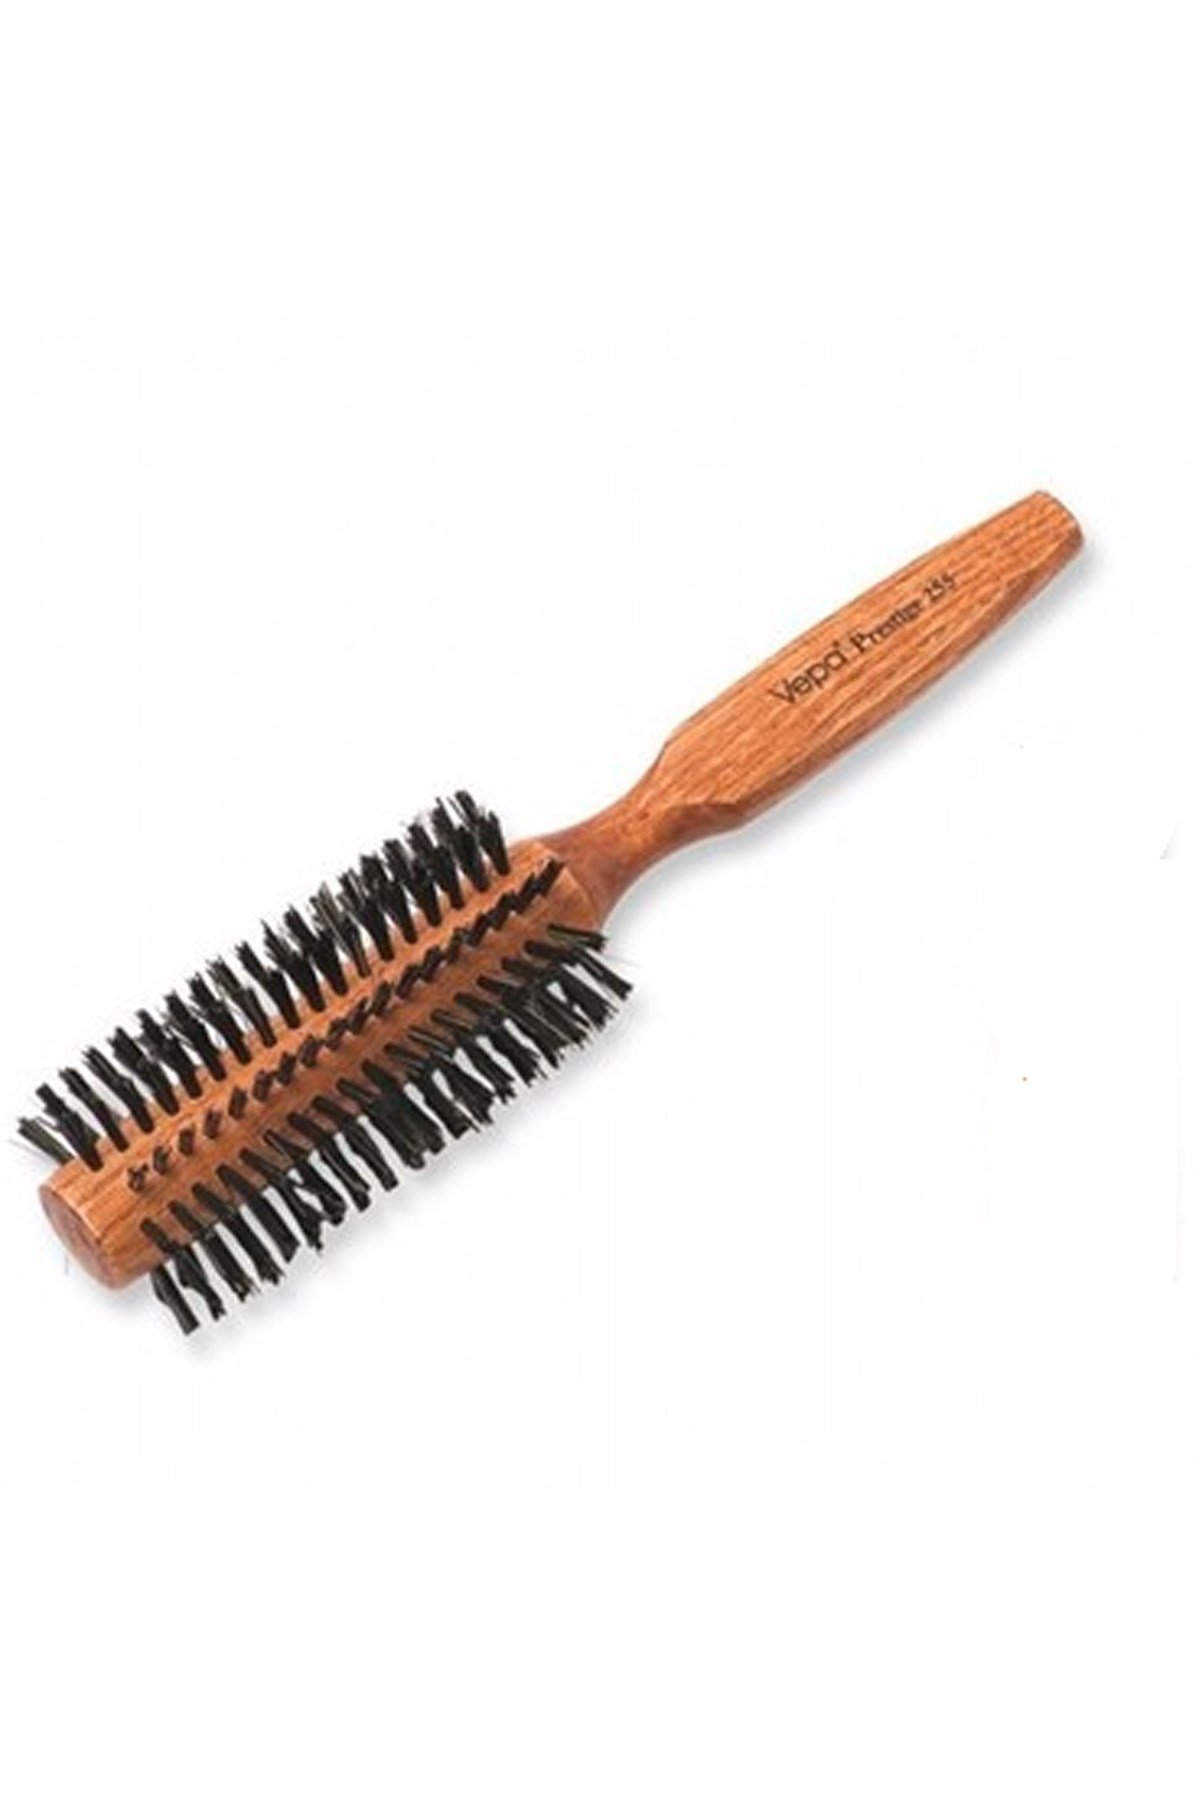 Vepa Prestige 255 Erkek ve Kadın için Ergonomik Saç Fırçası | YoncaToptan